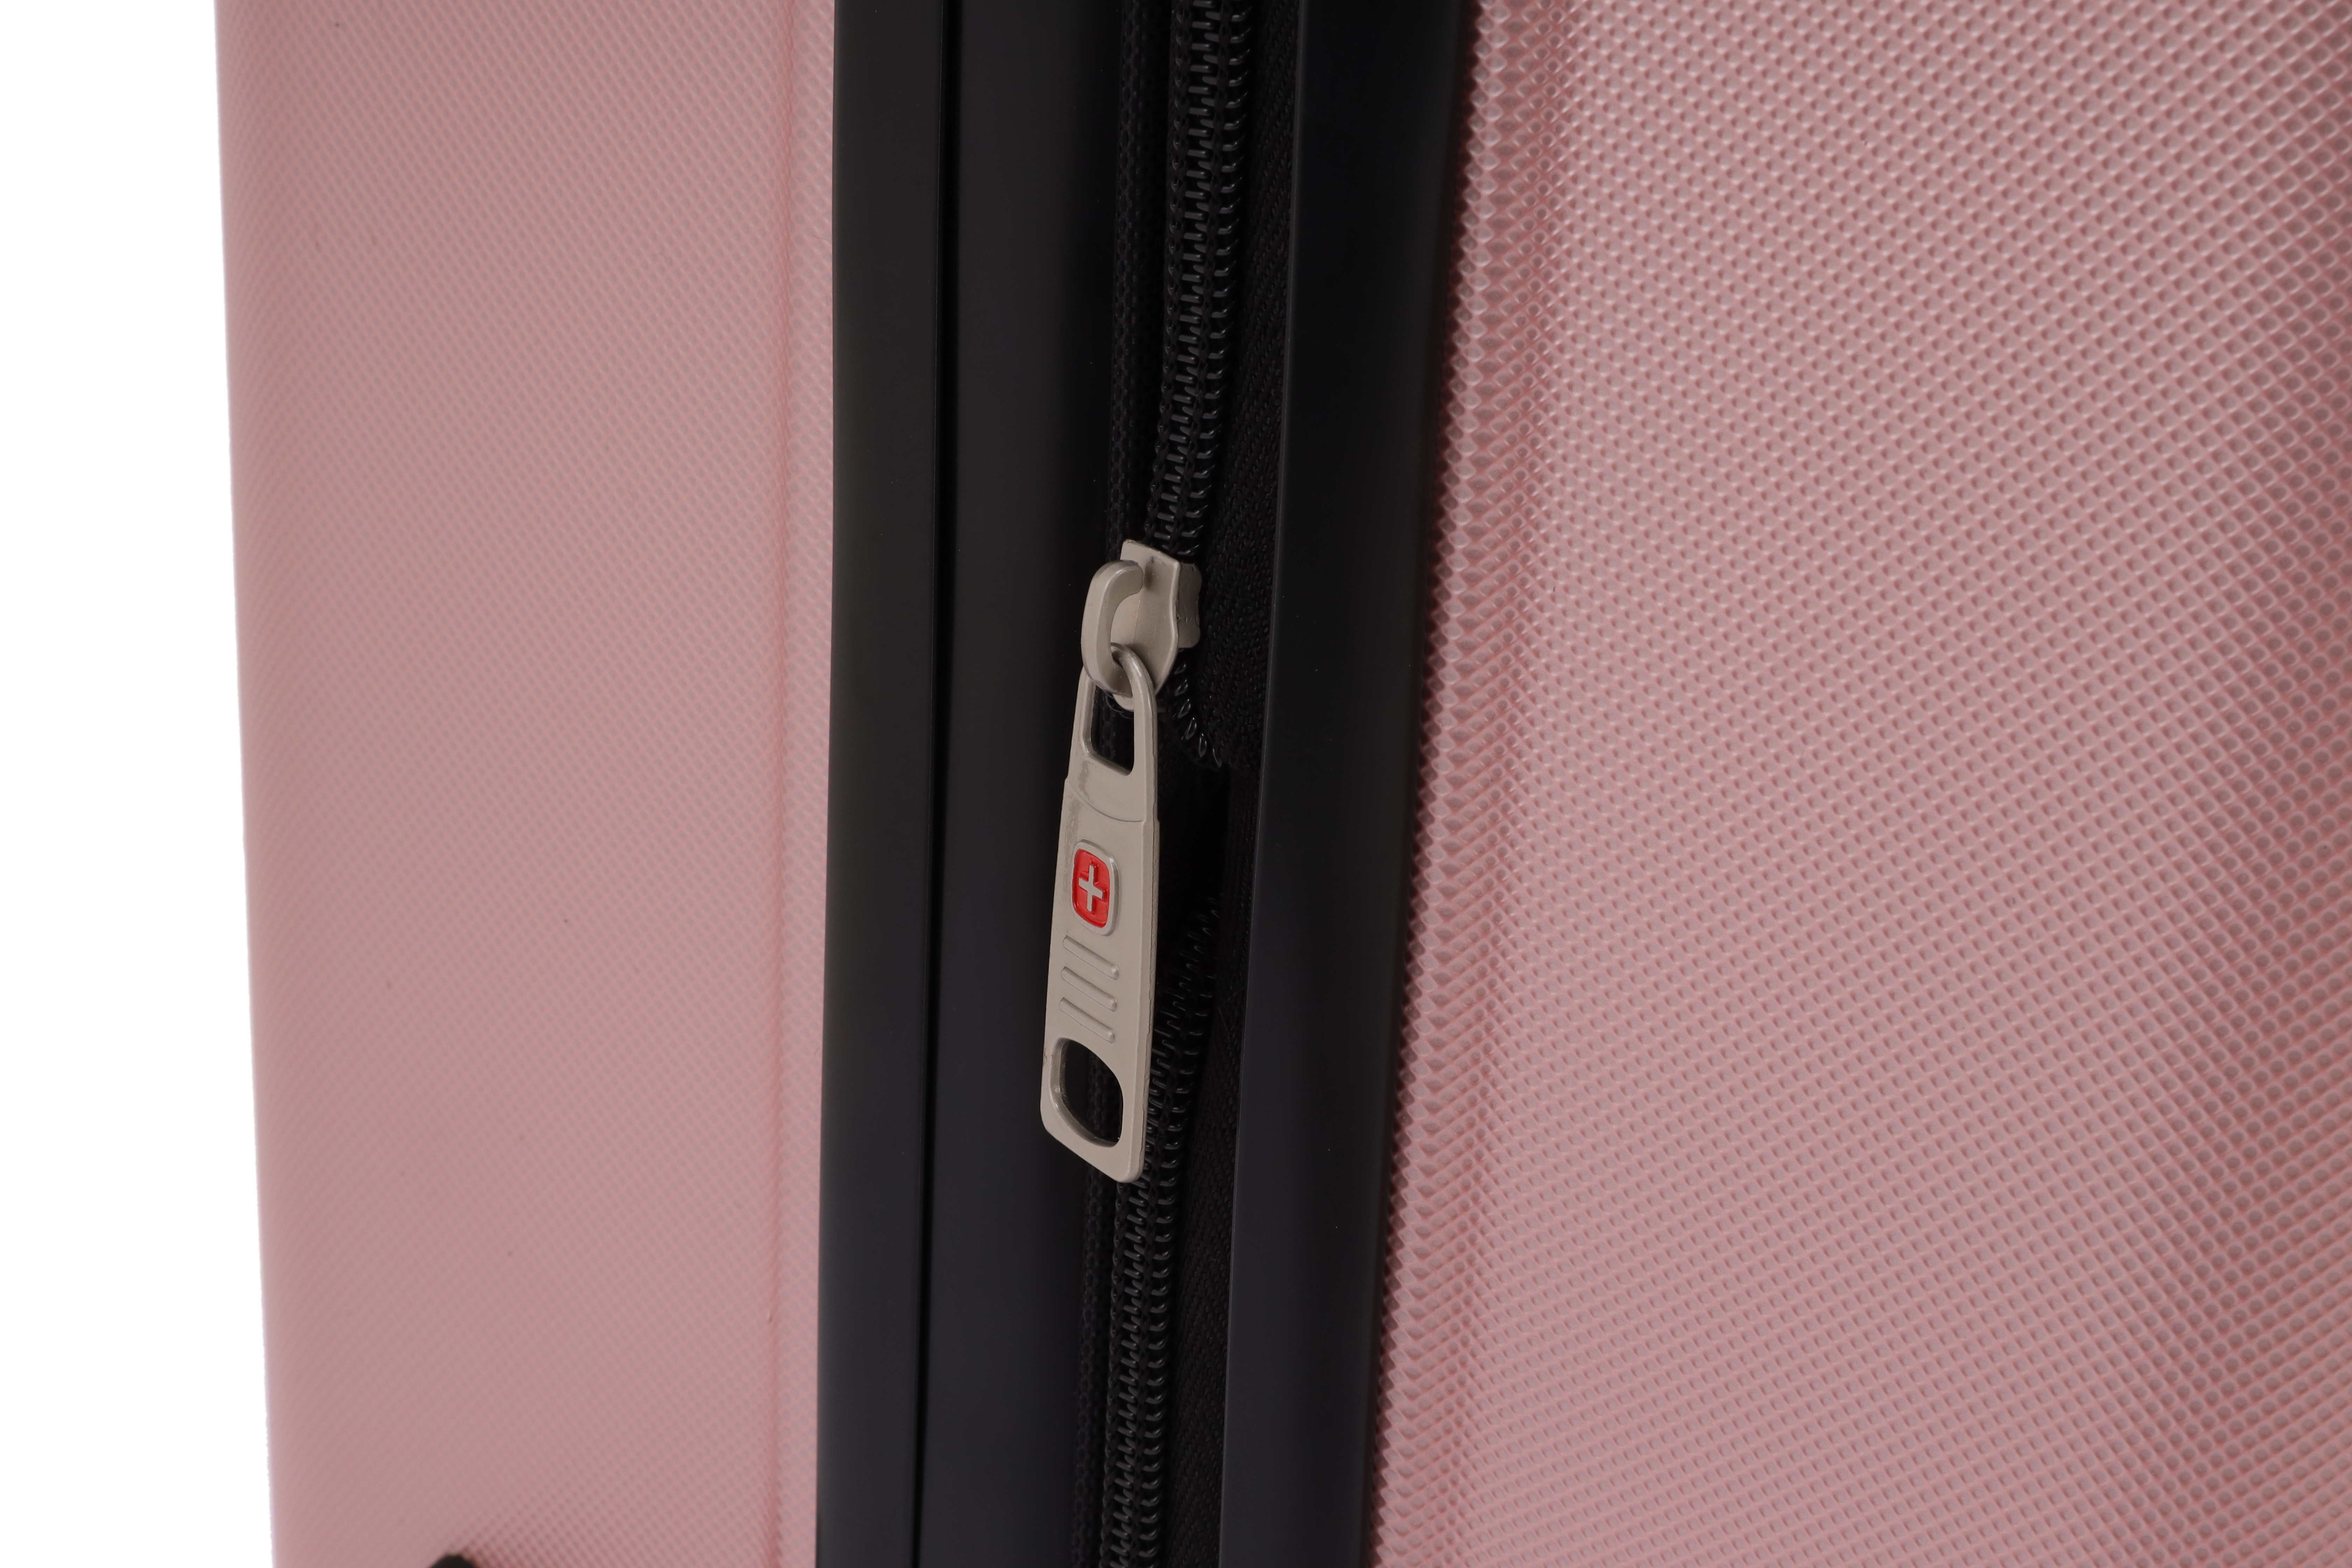 סט מזוודות קשיחות 3 יחידות מידות 28|24|20 אינץ' דגם Vegas צבע רוז גולד Swiss Voyager - תיק איפור במתנה